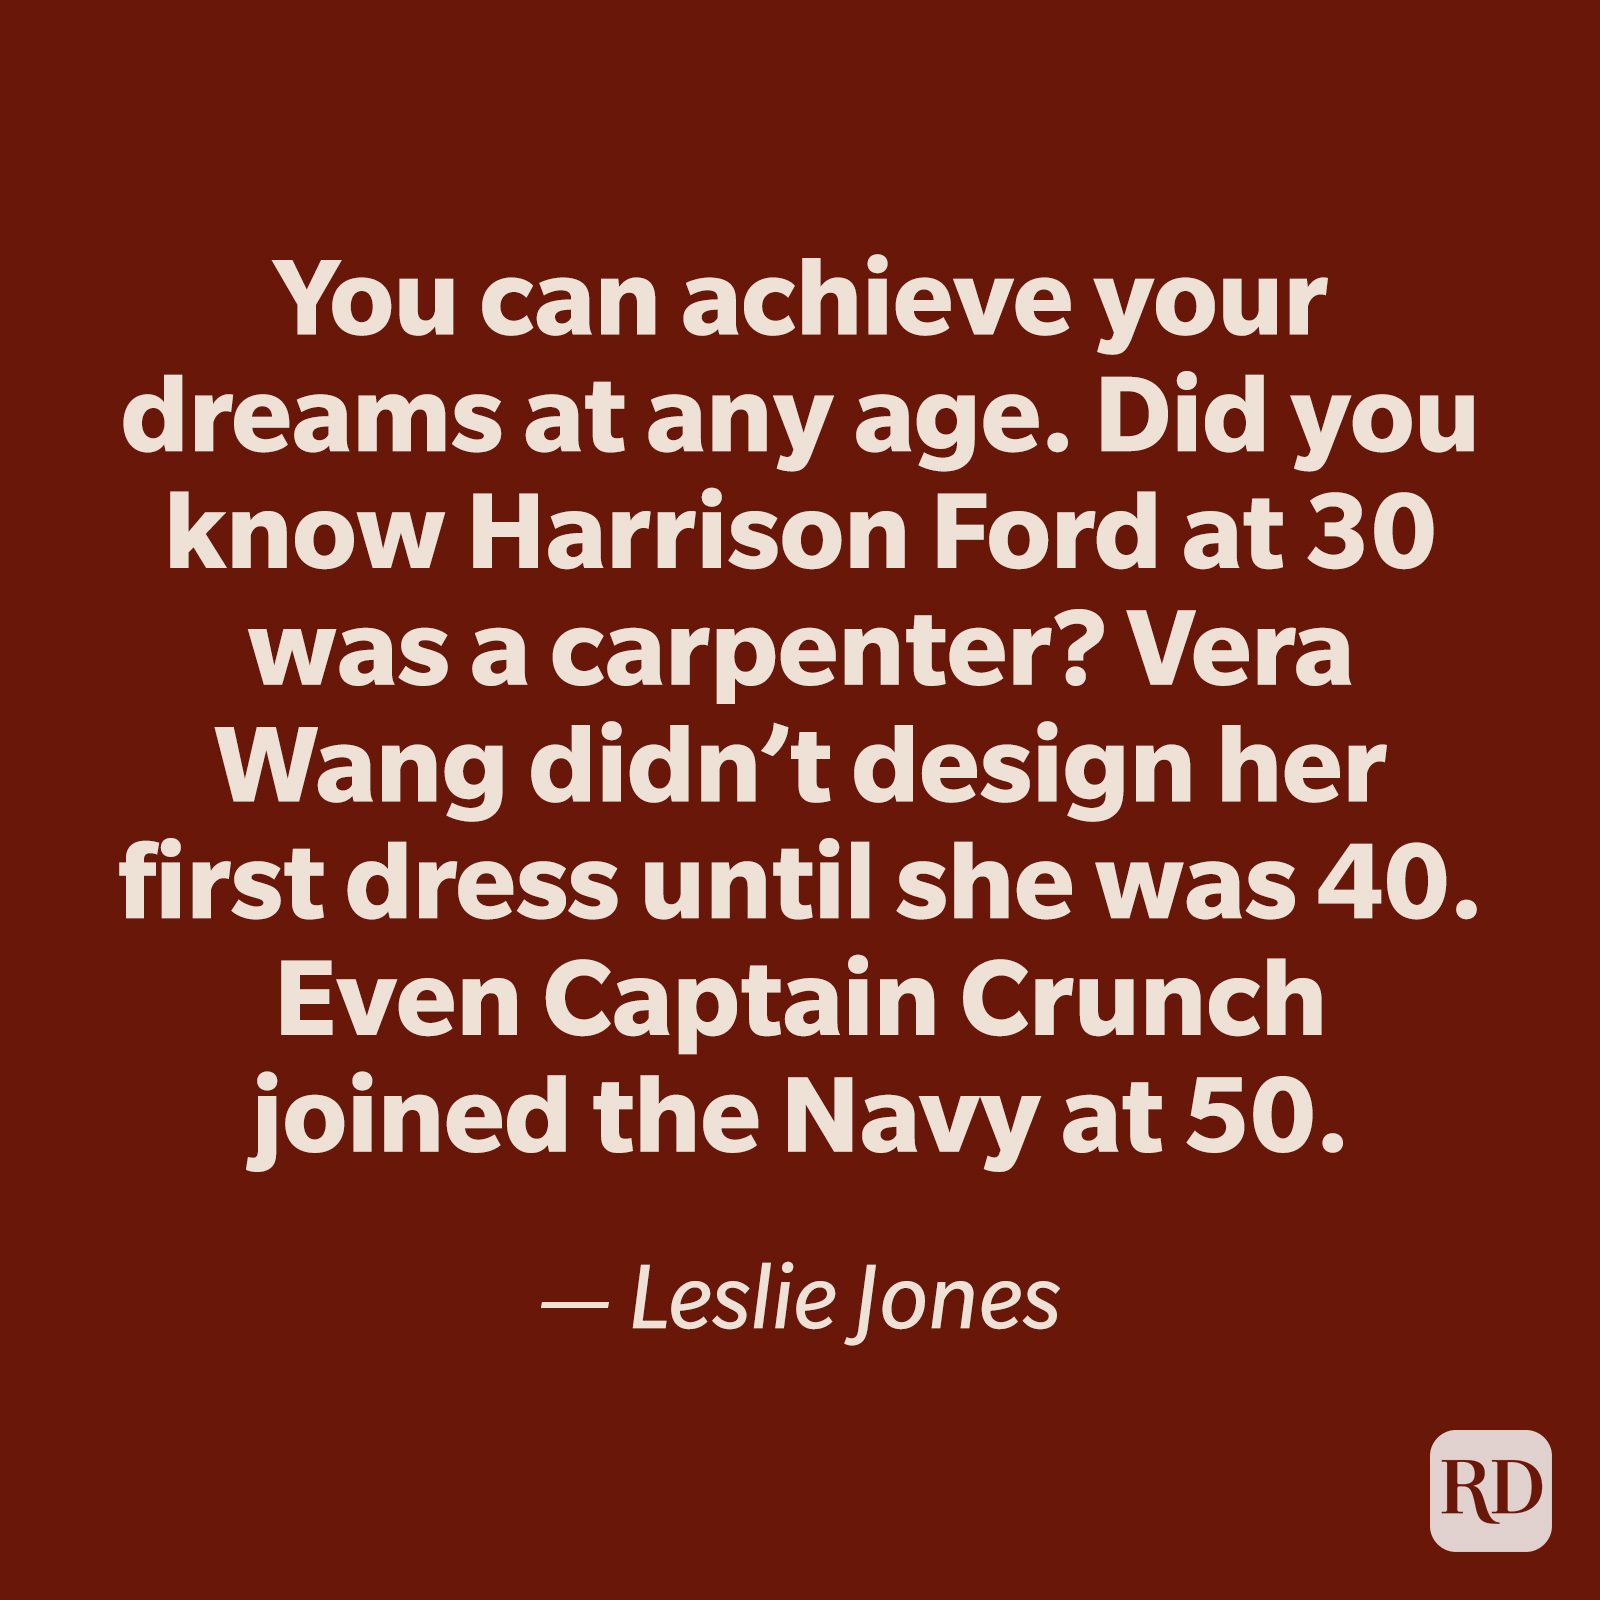 Leslie Jones quote